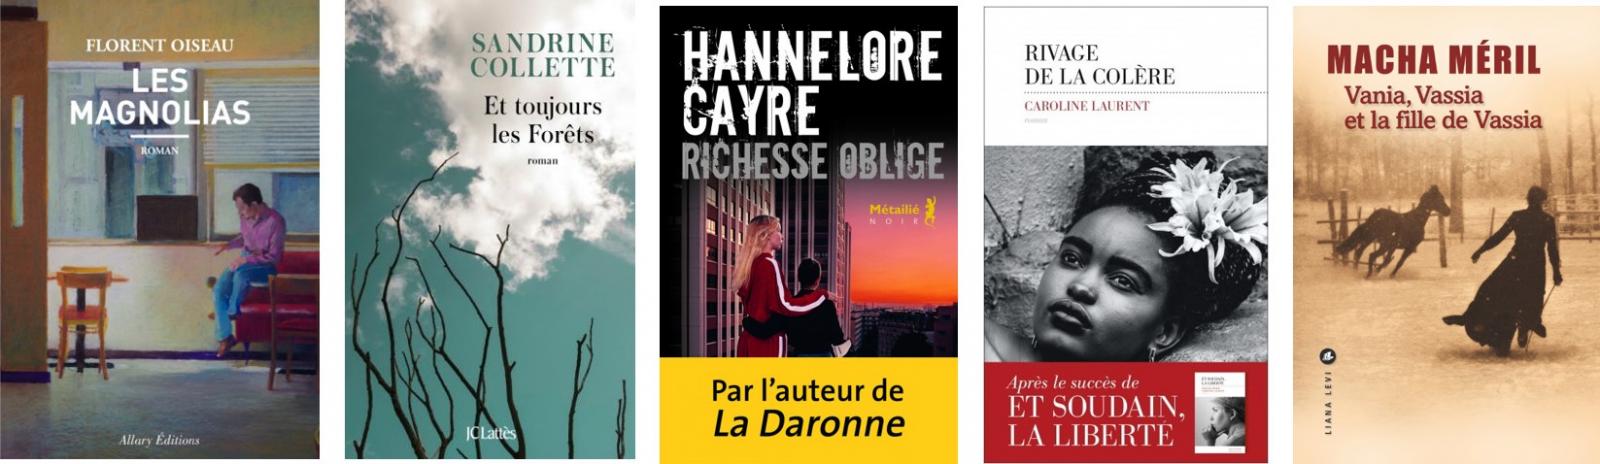 Sandrine Collette, lauréate du prix France bleu/Page des libraires